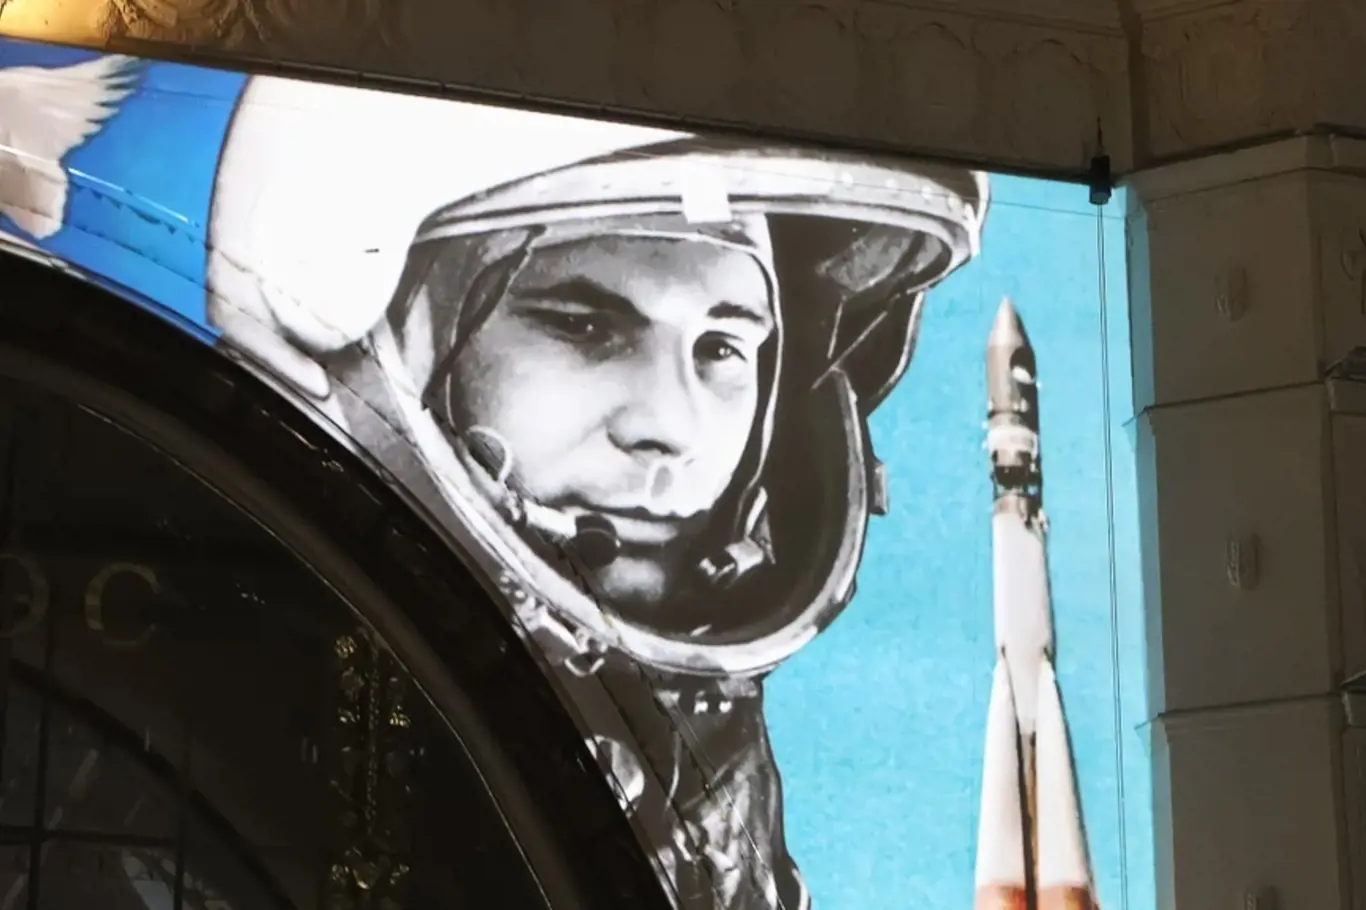 Jurij Gagarin